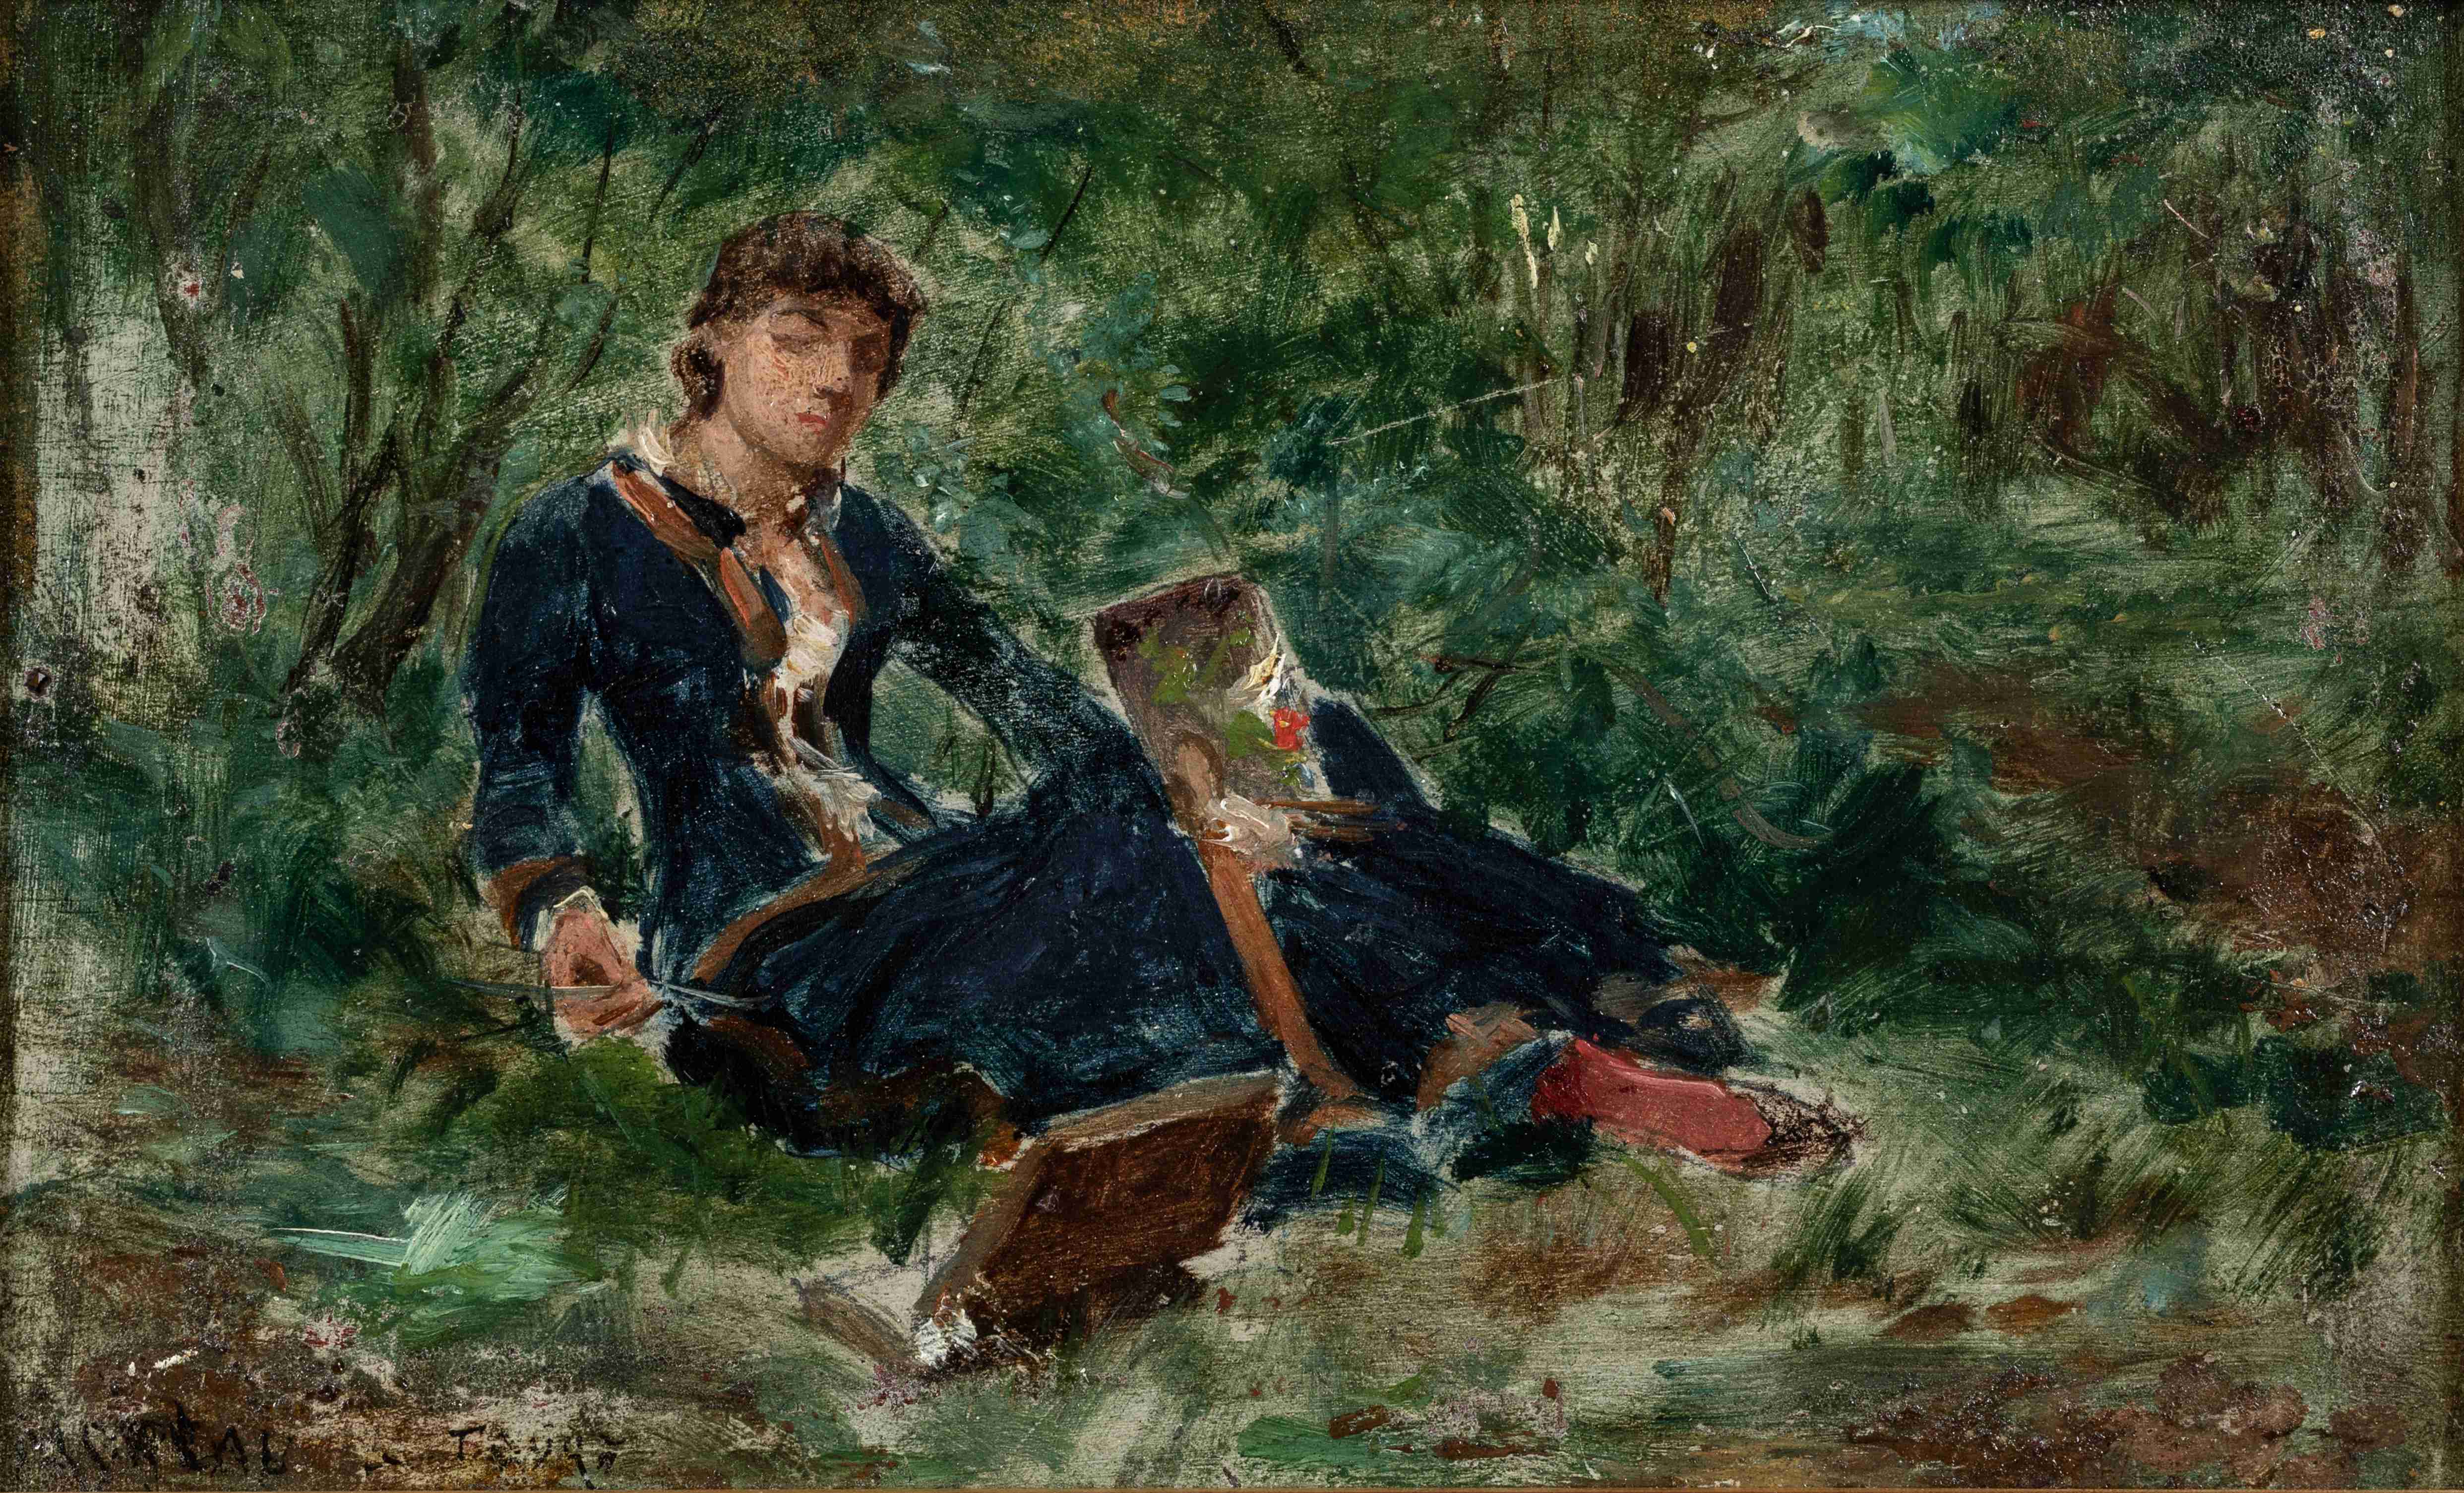 Georges MOREAU DE TOURS (Ivry-sur-Seine, 1848 - Bois-le-Roi, 1901)
Thérèse assise...